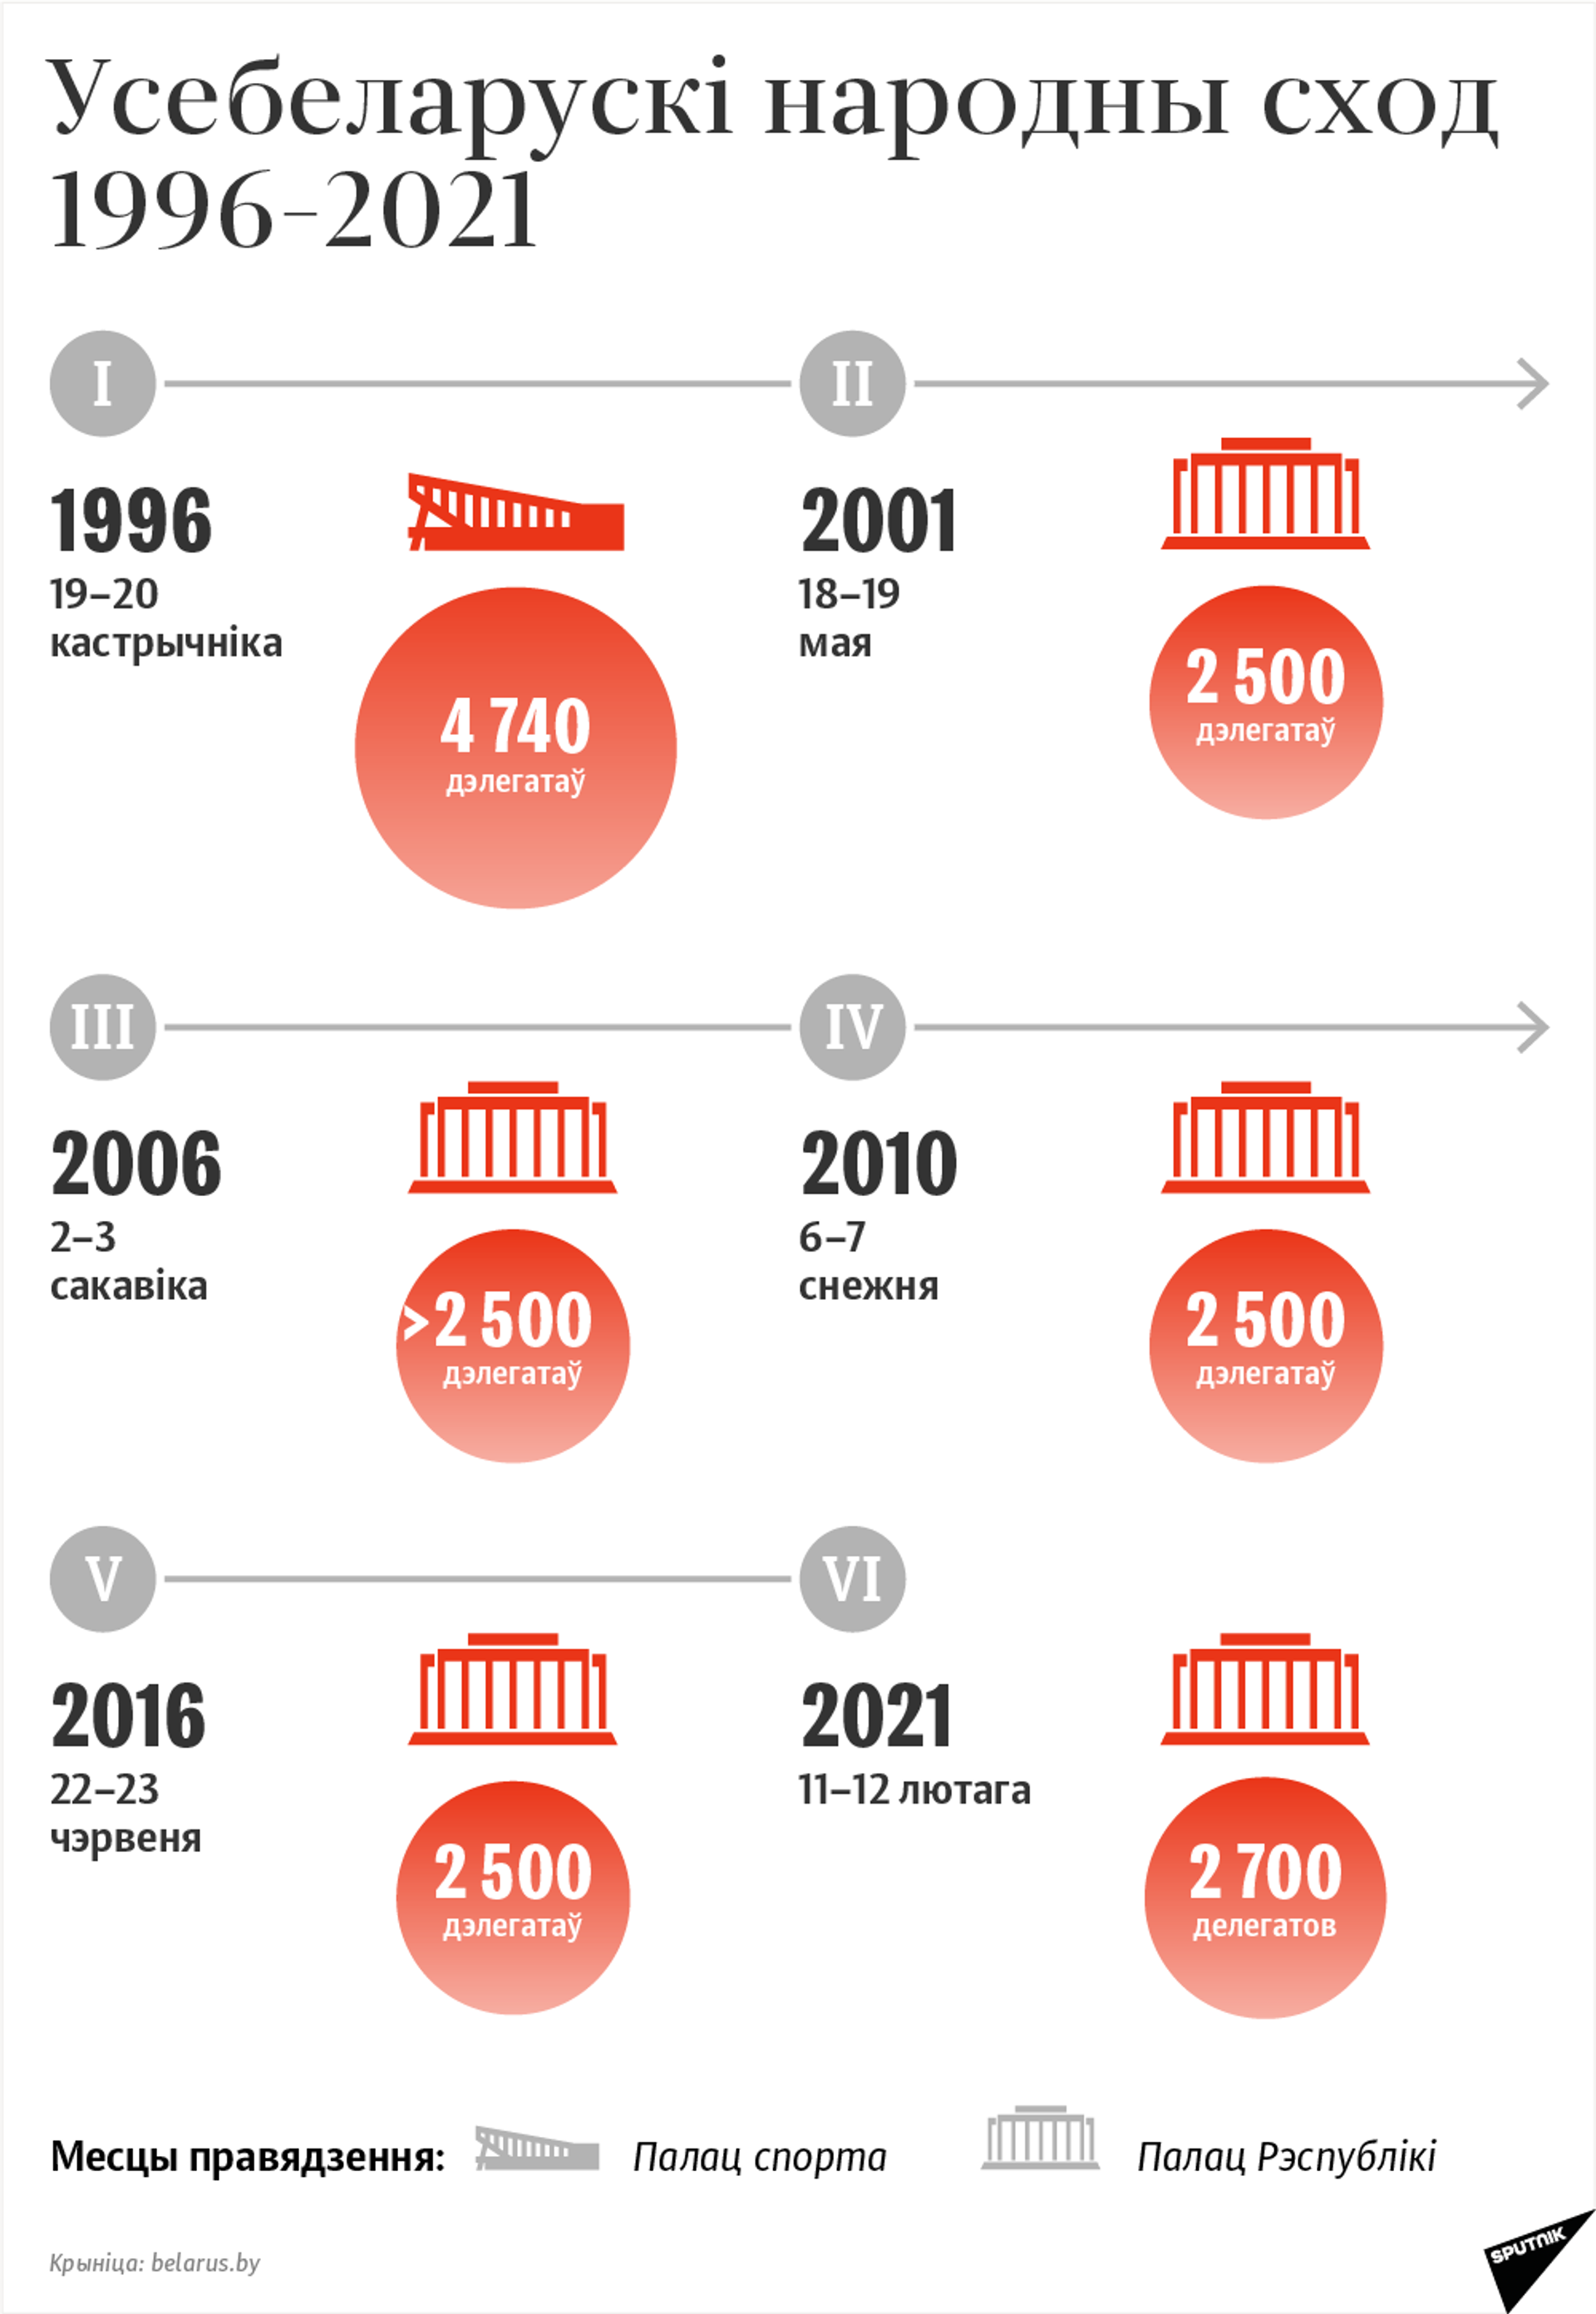 Усебеларускі народны сход: храналогія 1996–2021 - Sputnik Беларусь, 1920, 10.02.2021